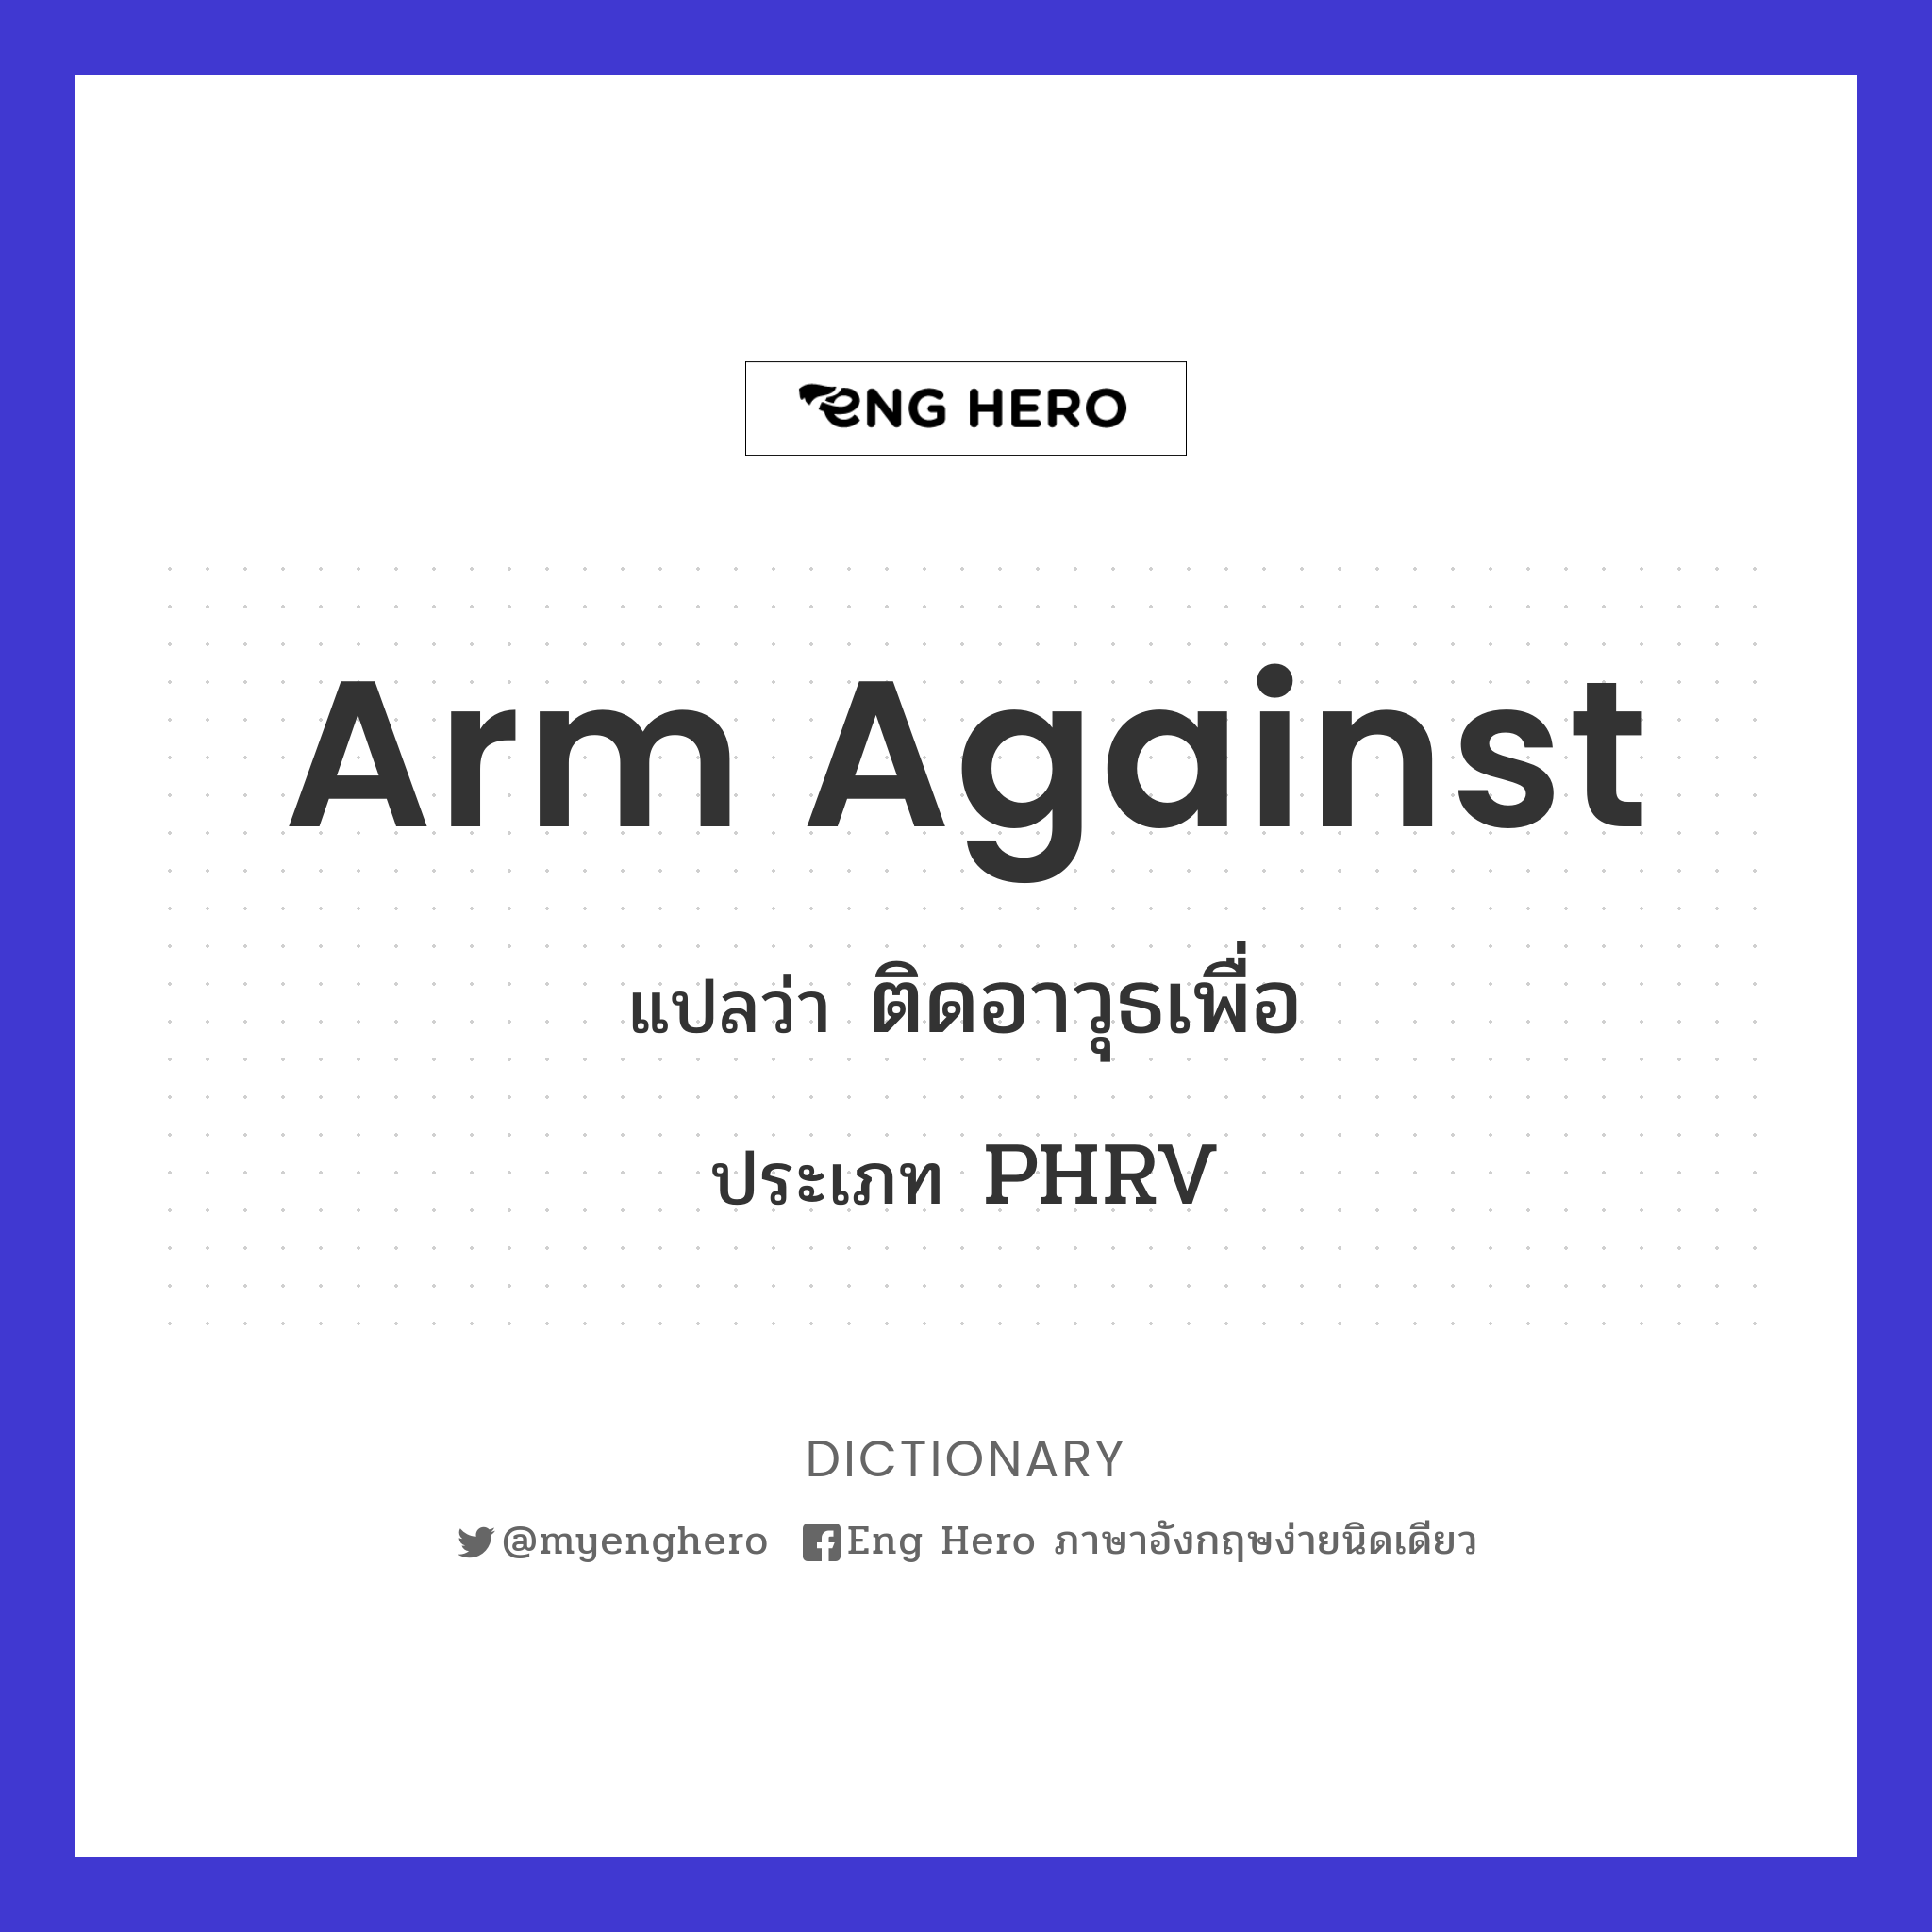 arm against